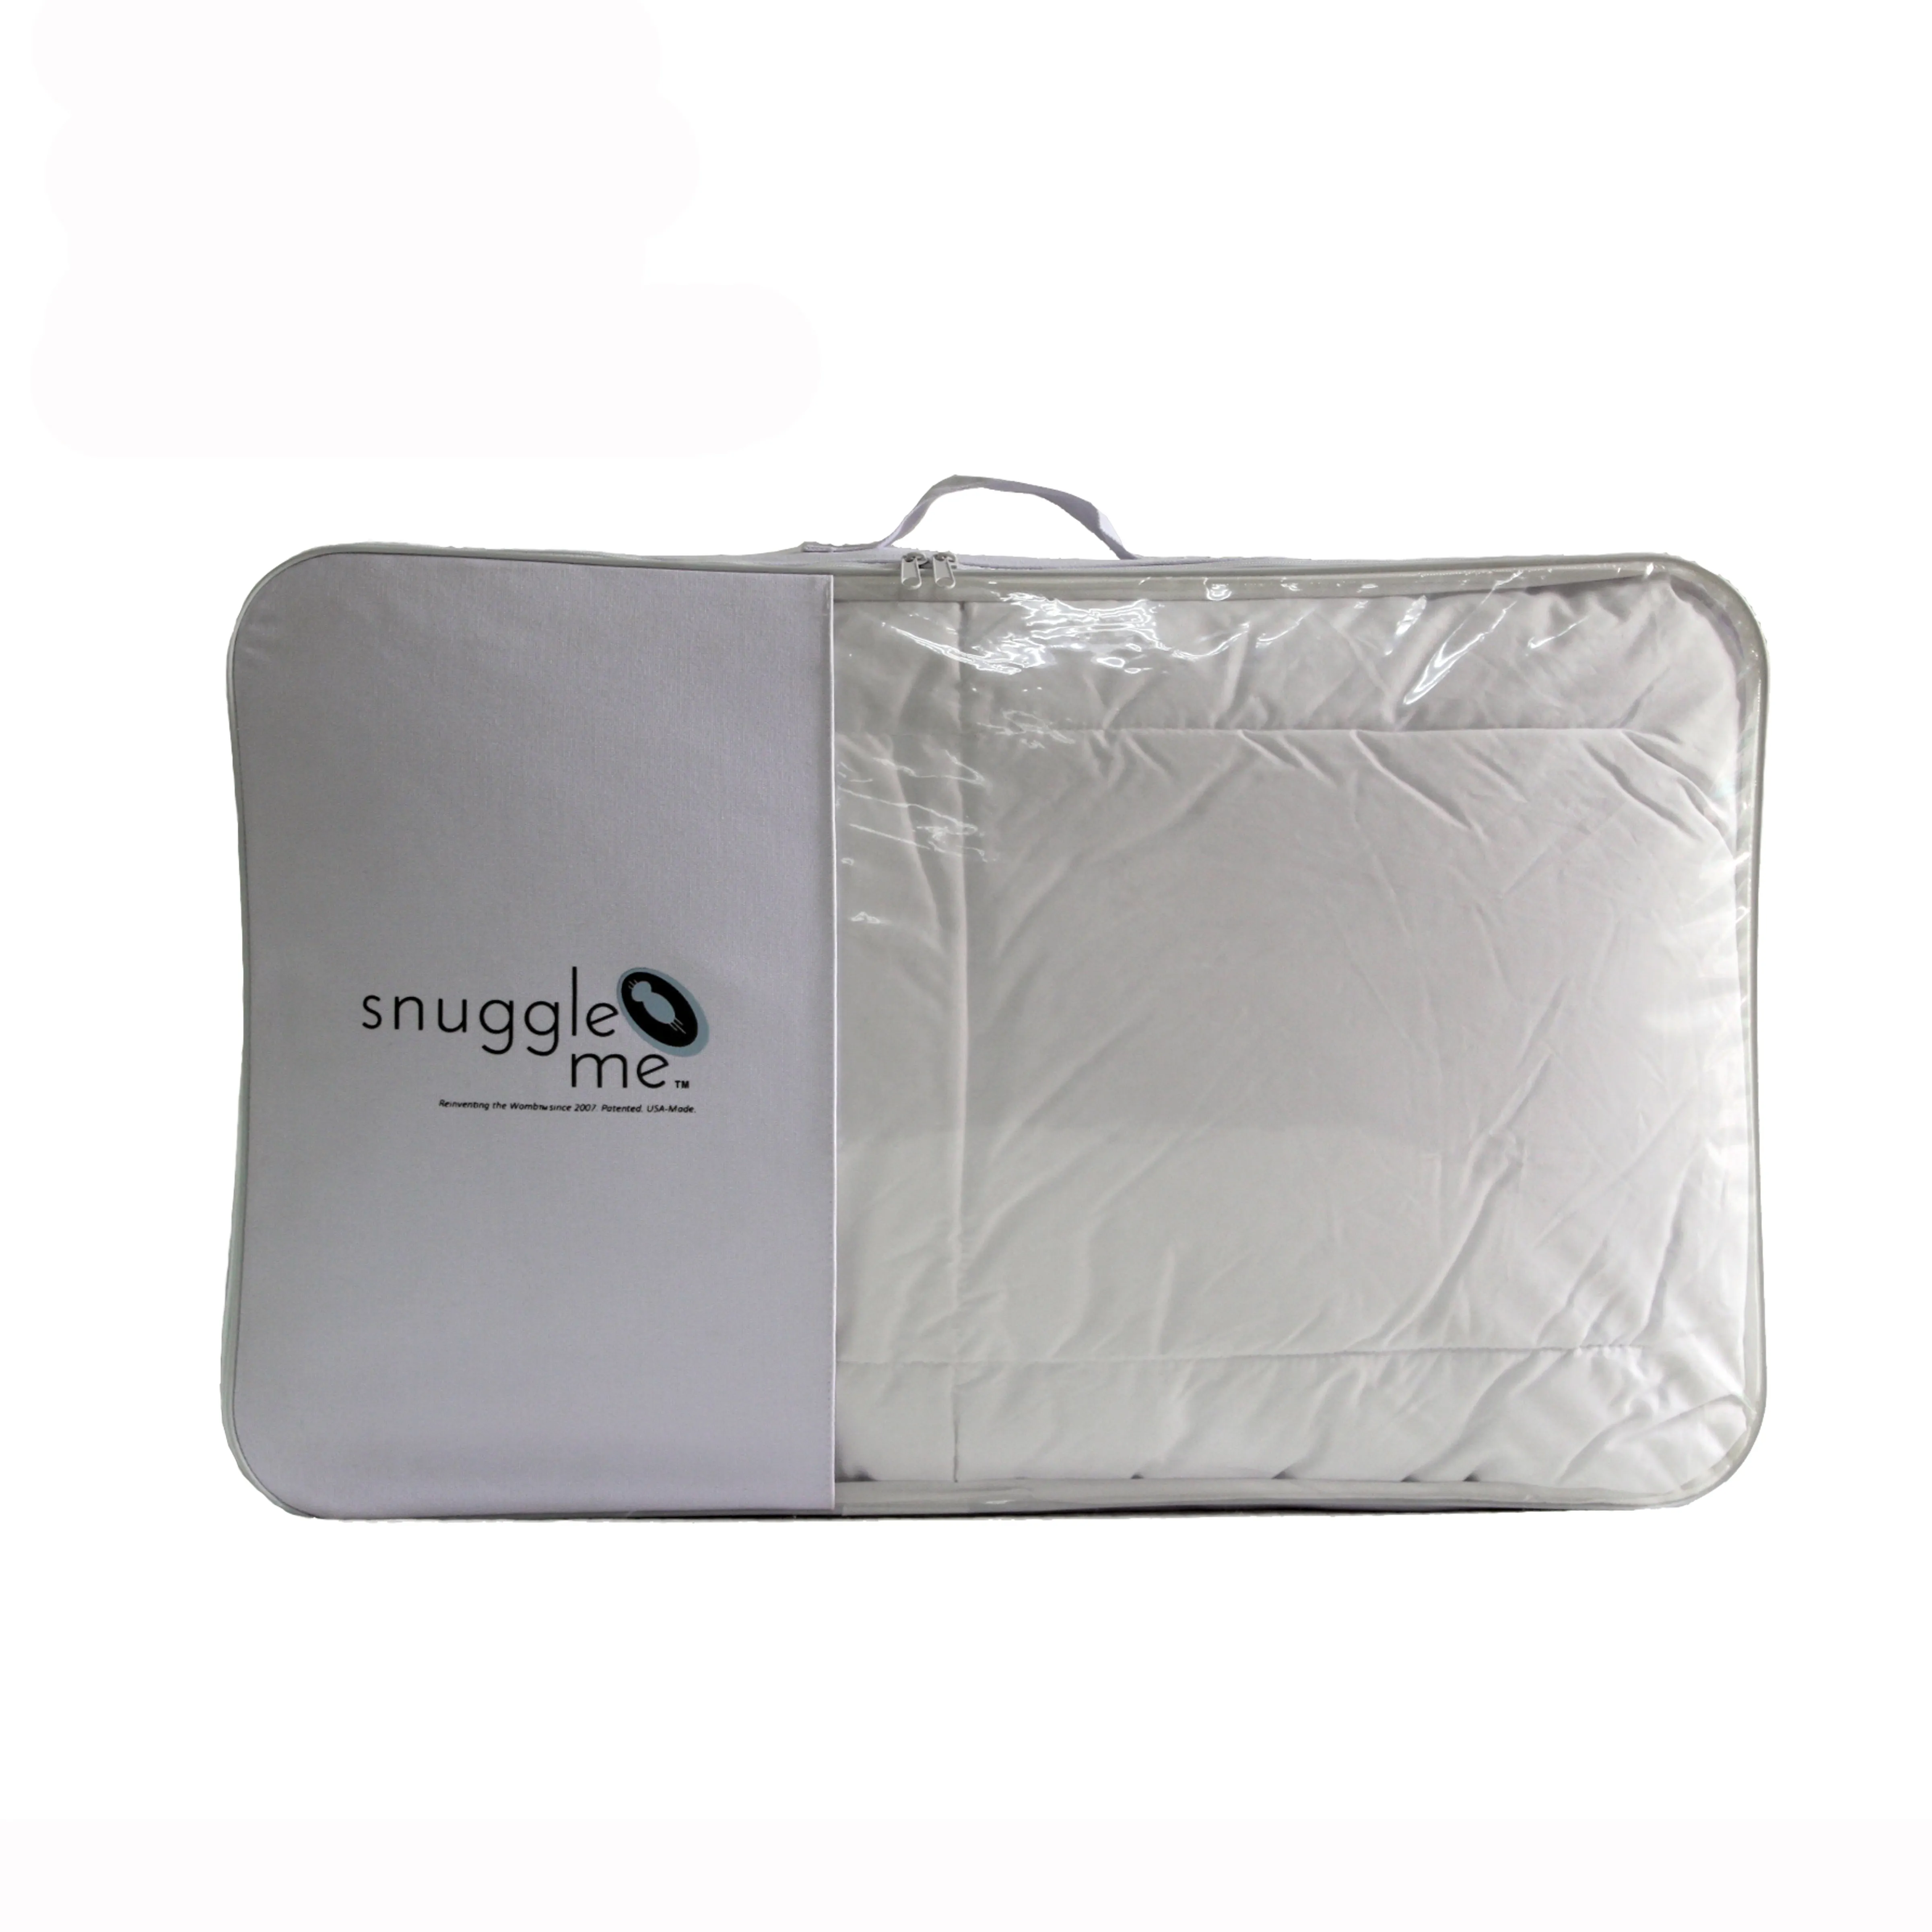 Bolsa de polietileno de plástico transparente, embalaje de pvc, para juegos de sábanas, colchas, mantas